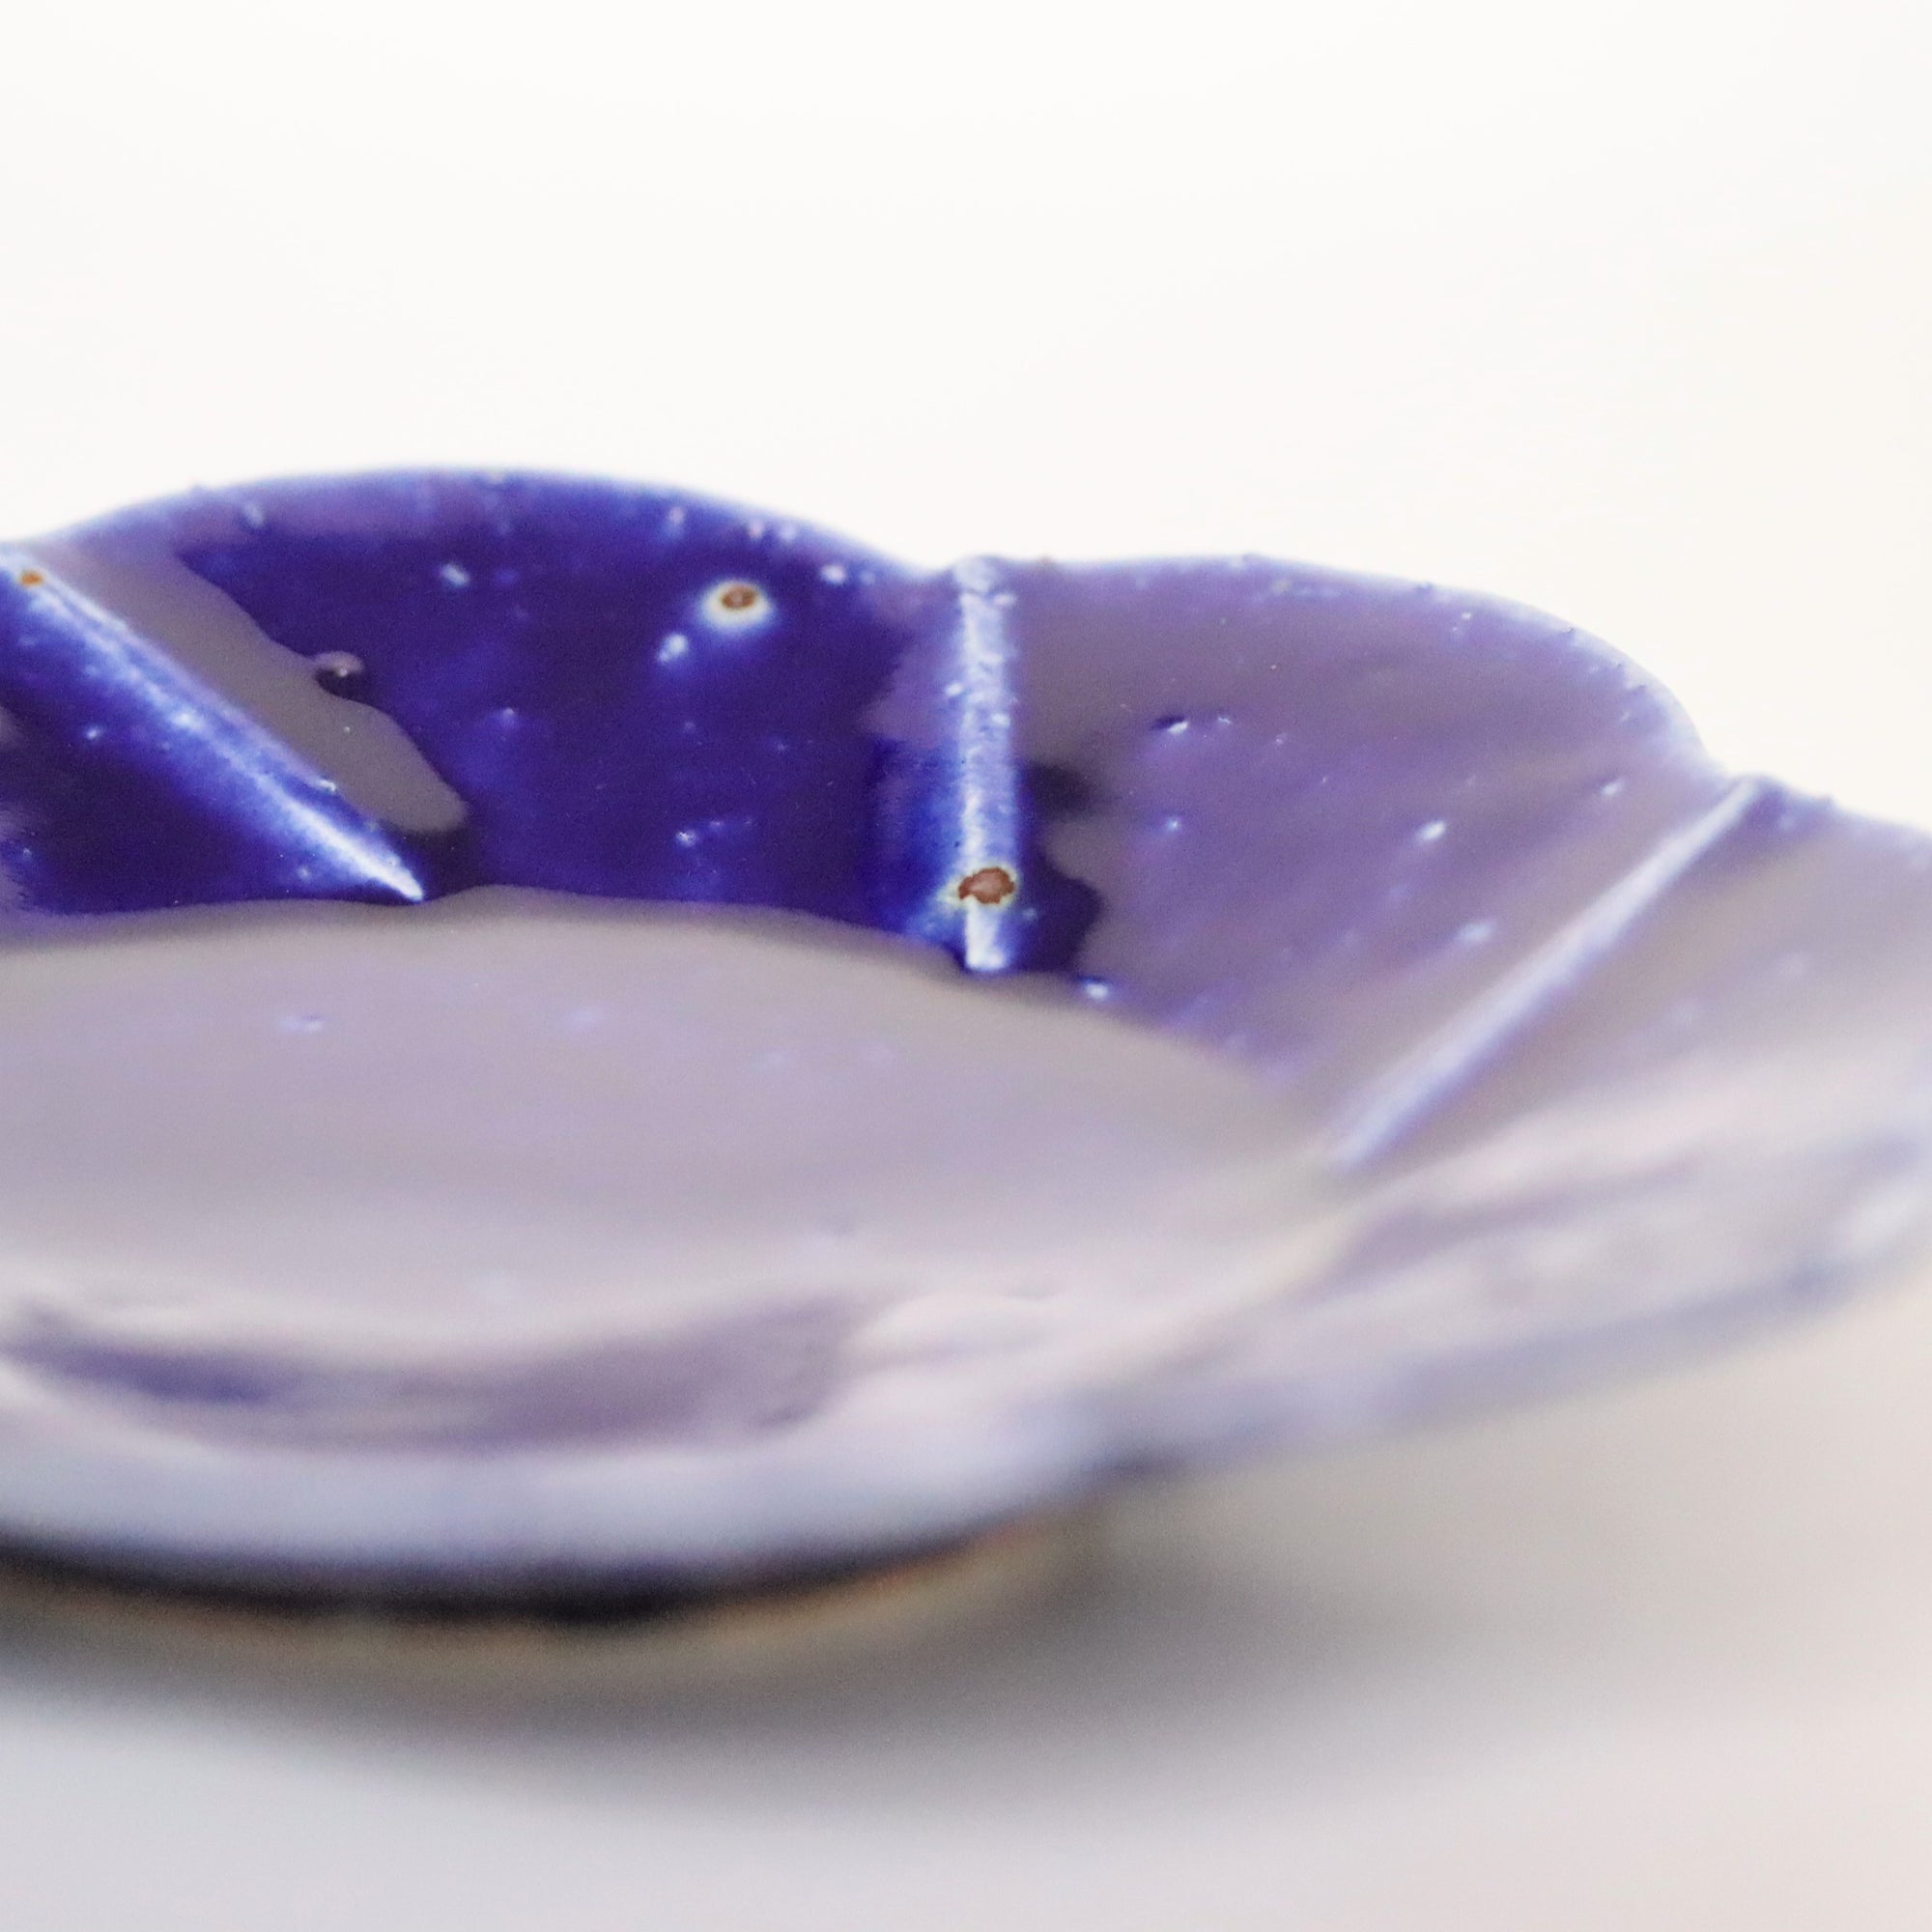 Flowing Luli Glaze Flower-shaped Plate